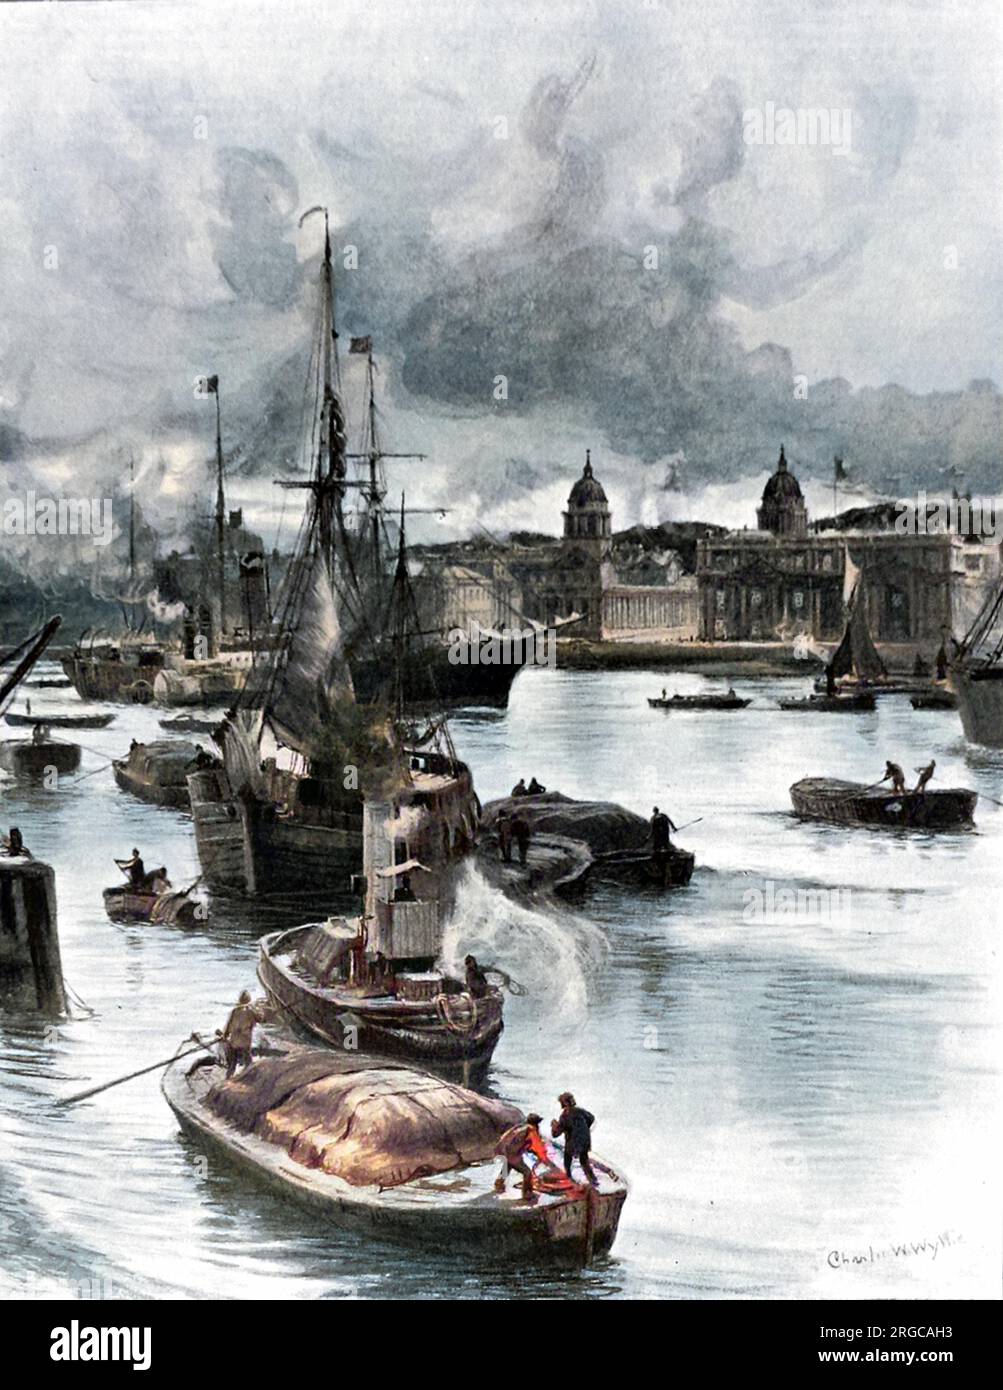 Vue sur la Tamise, de l'île des chiens, en direction de l'hôpital naval de Greenwich, Londres. Plusieurs briquets, un remorqueur à vapeur, une barge à voile et un grand bateau à vapeur à aubes sont visibles dans la rivière. Banque D'Images